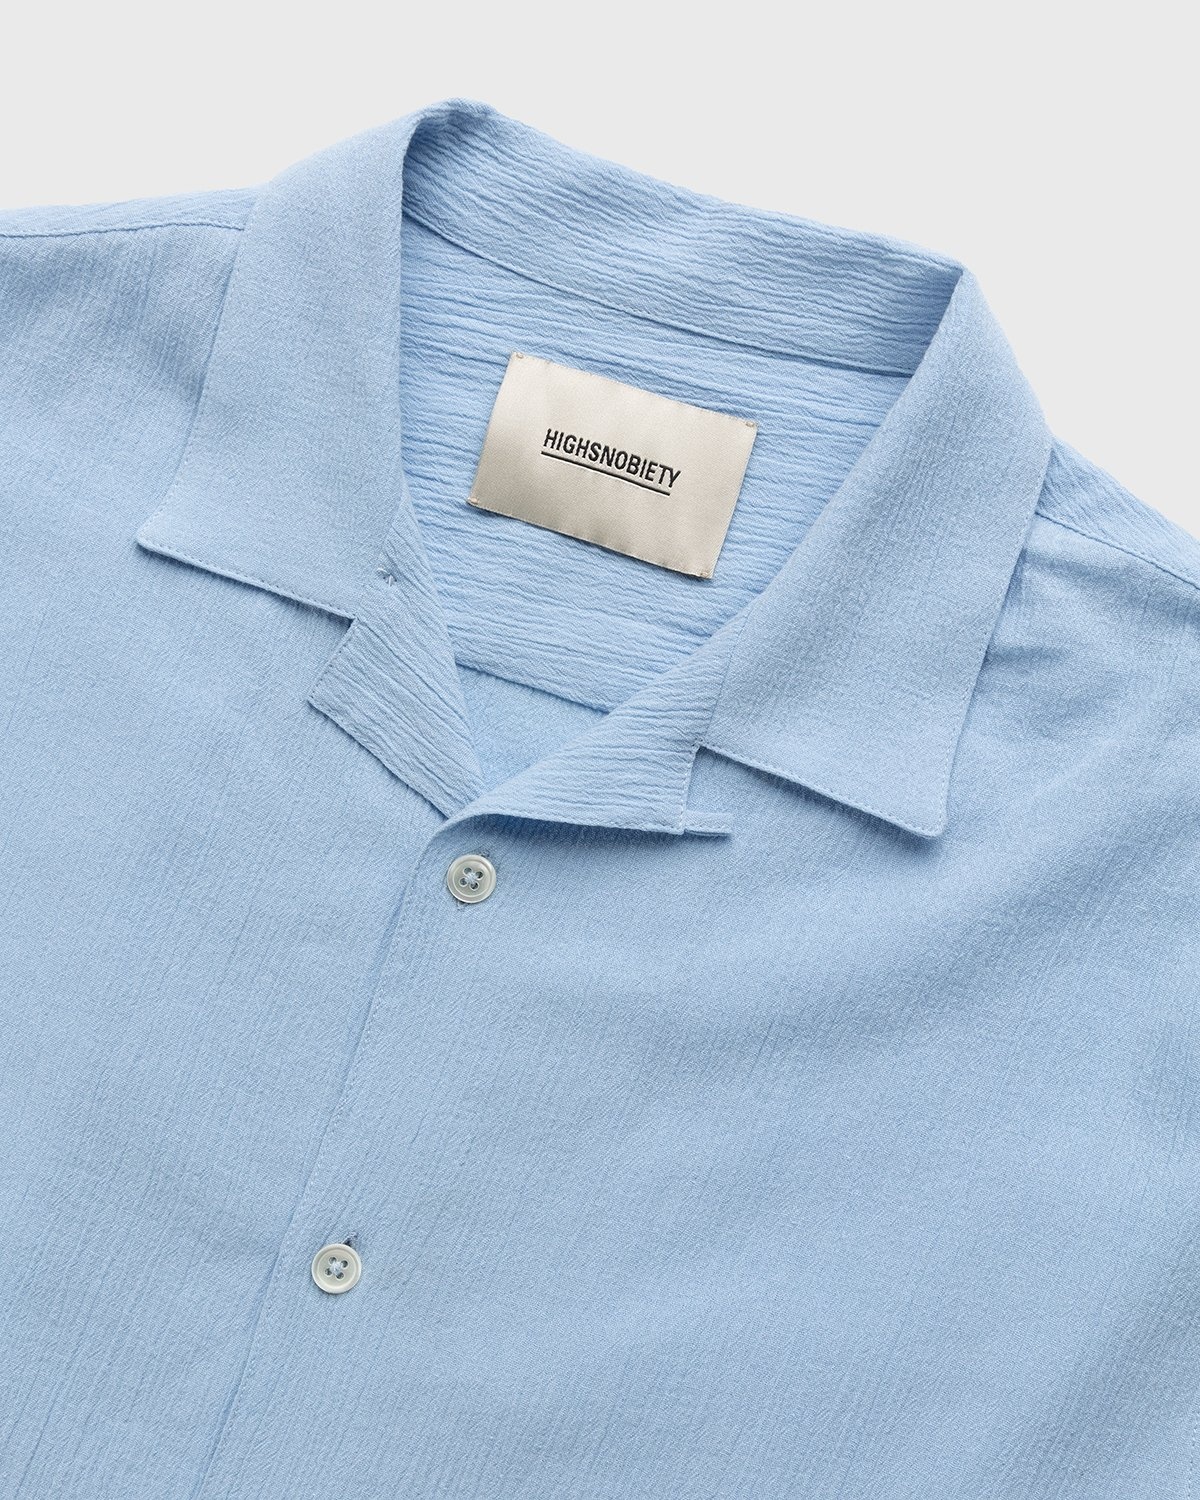 Highsnobiety – Crepe Short Sleeve Shirt Sky Blue - Shirts - Blue - Image 3